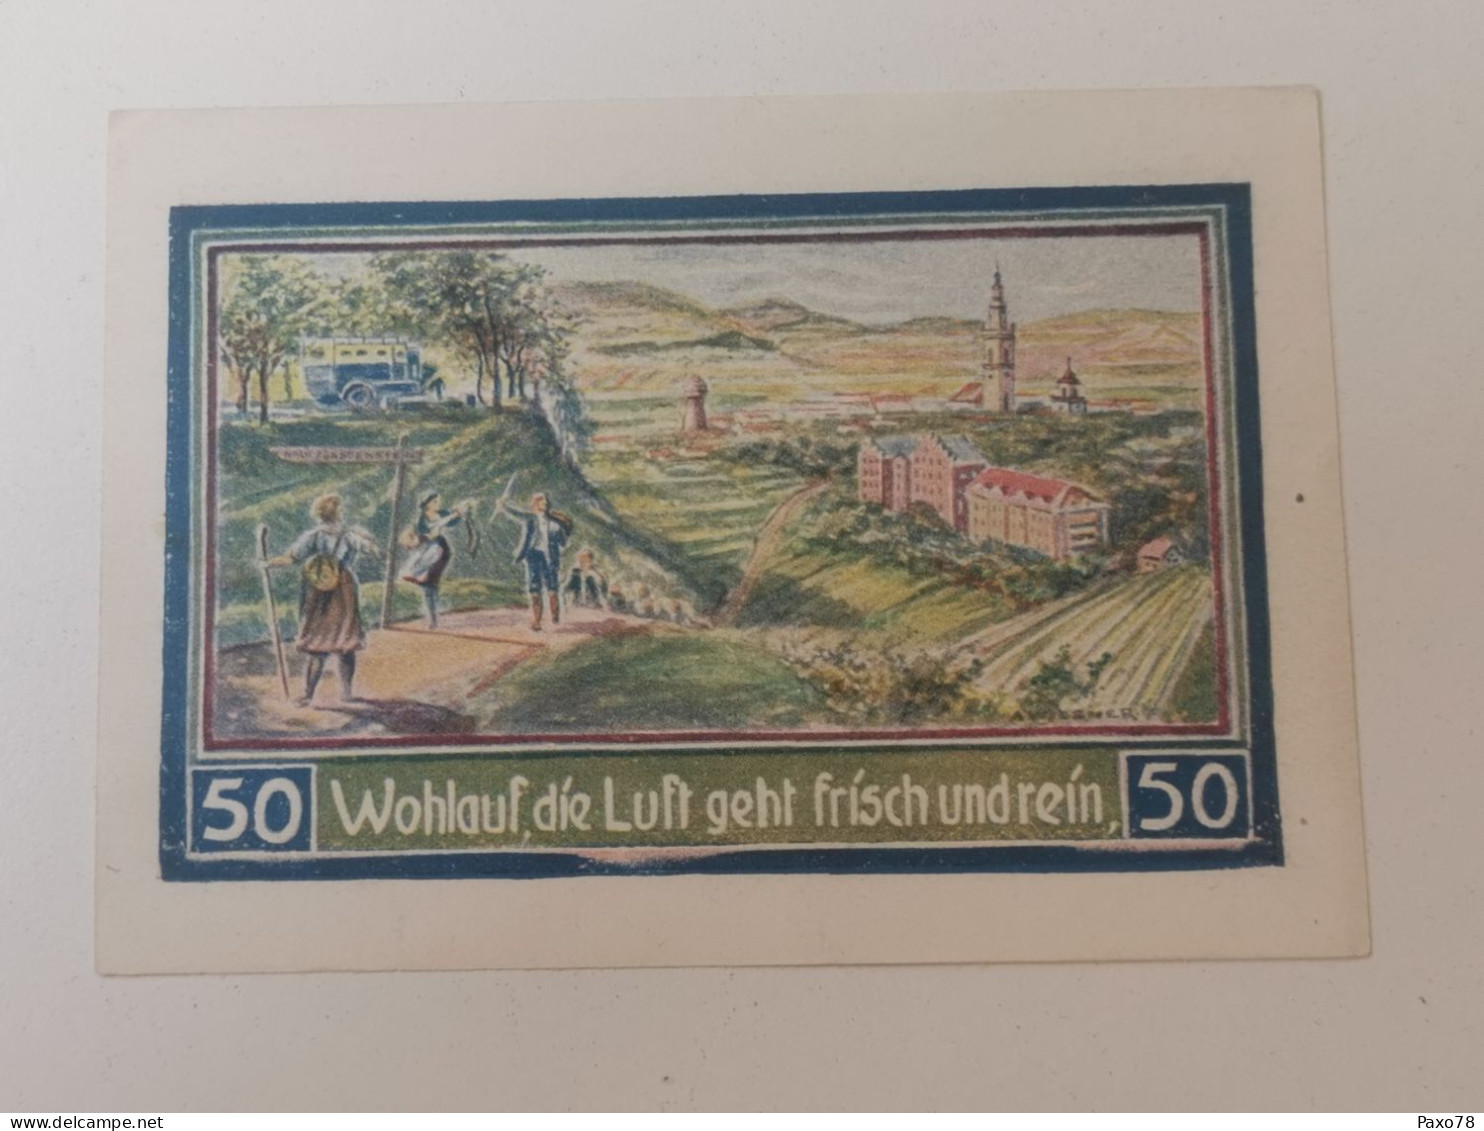 Allemagne Notgeld, 50 Pfennig Stadt Freiburg Schles - Non Classés